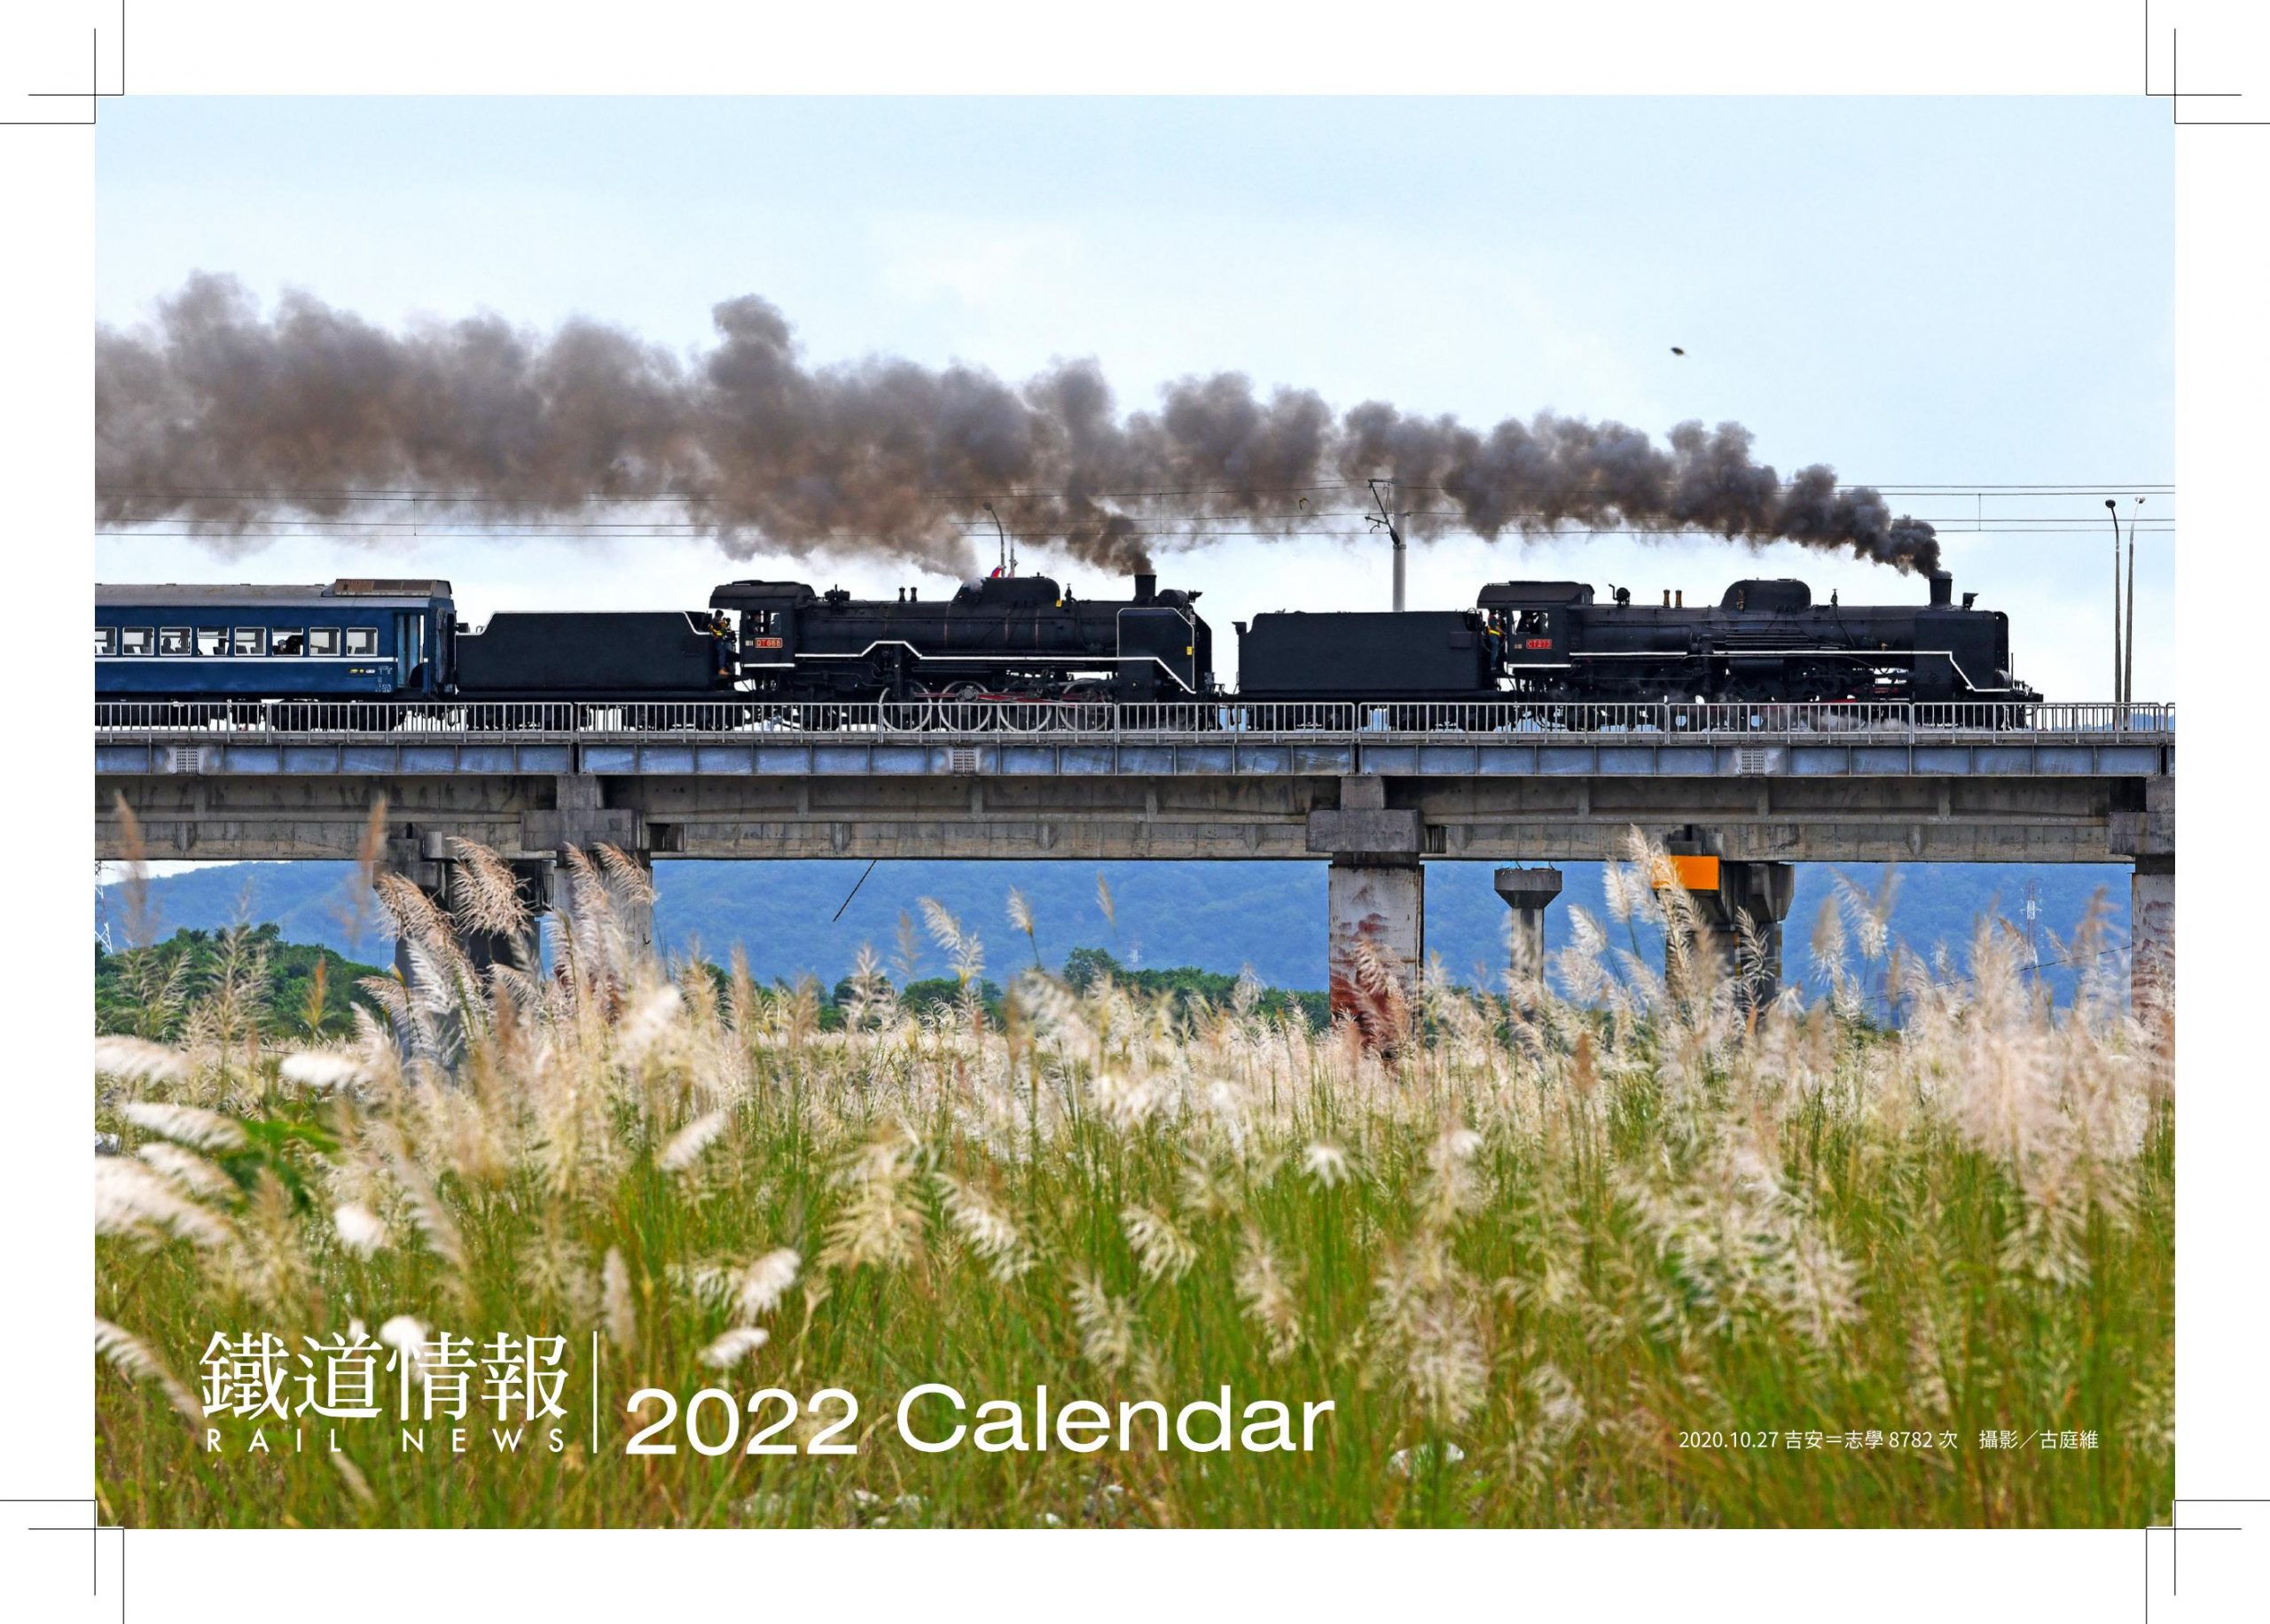 《鐵道情報》2022年桌曆